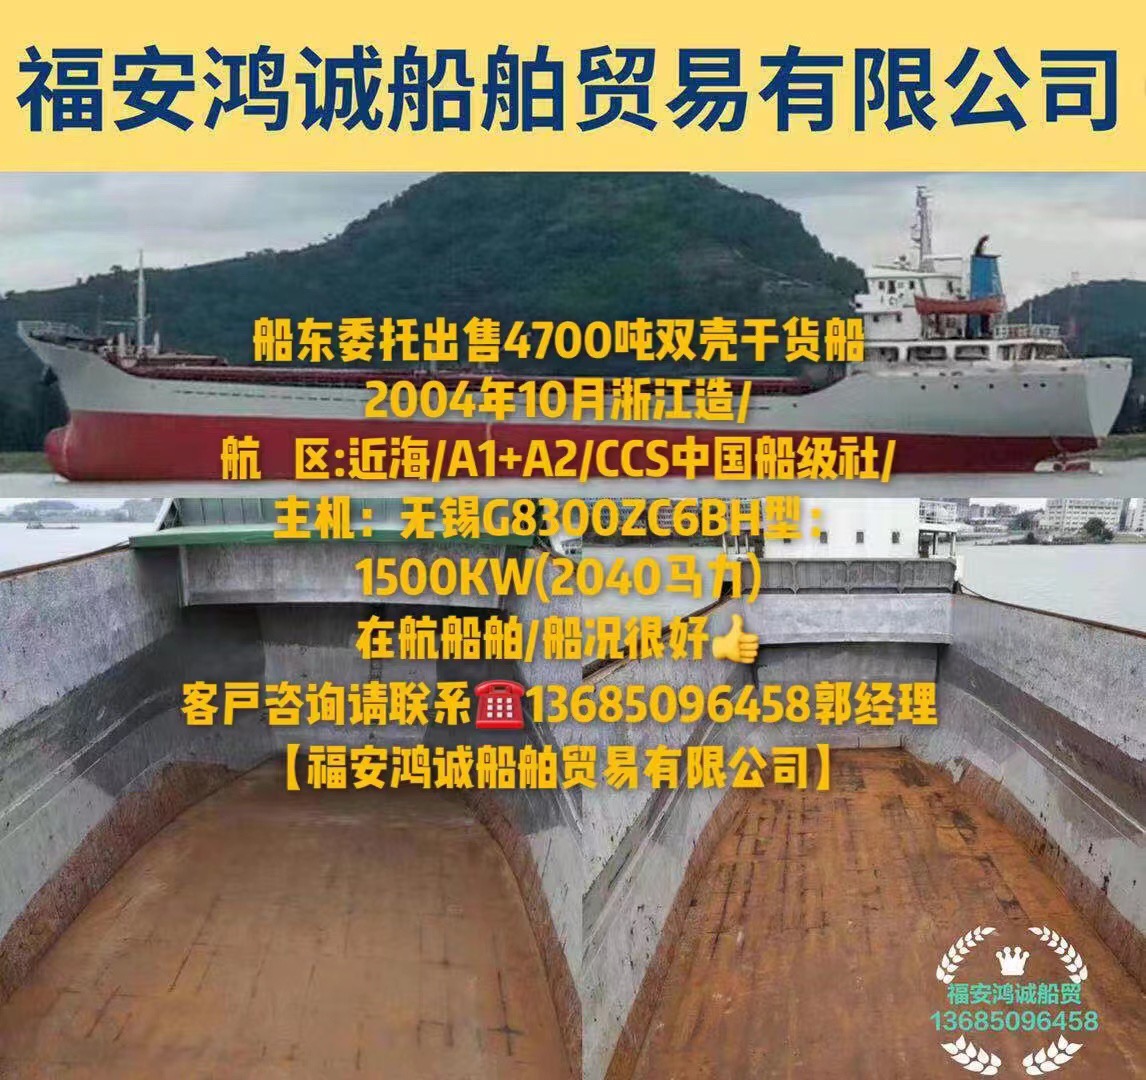 出售4700吨双壳干货船